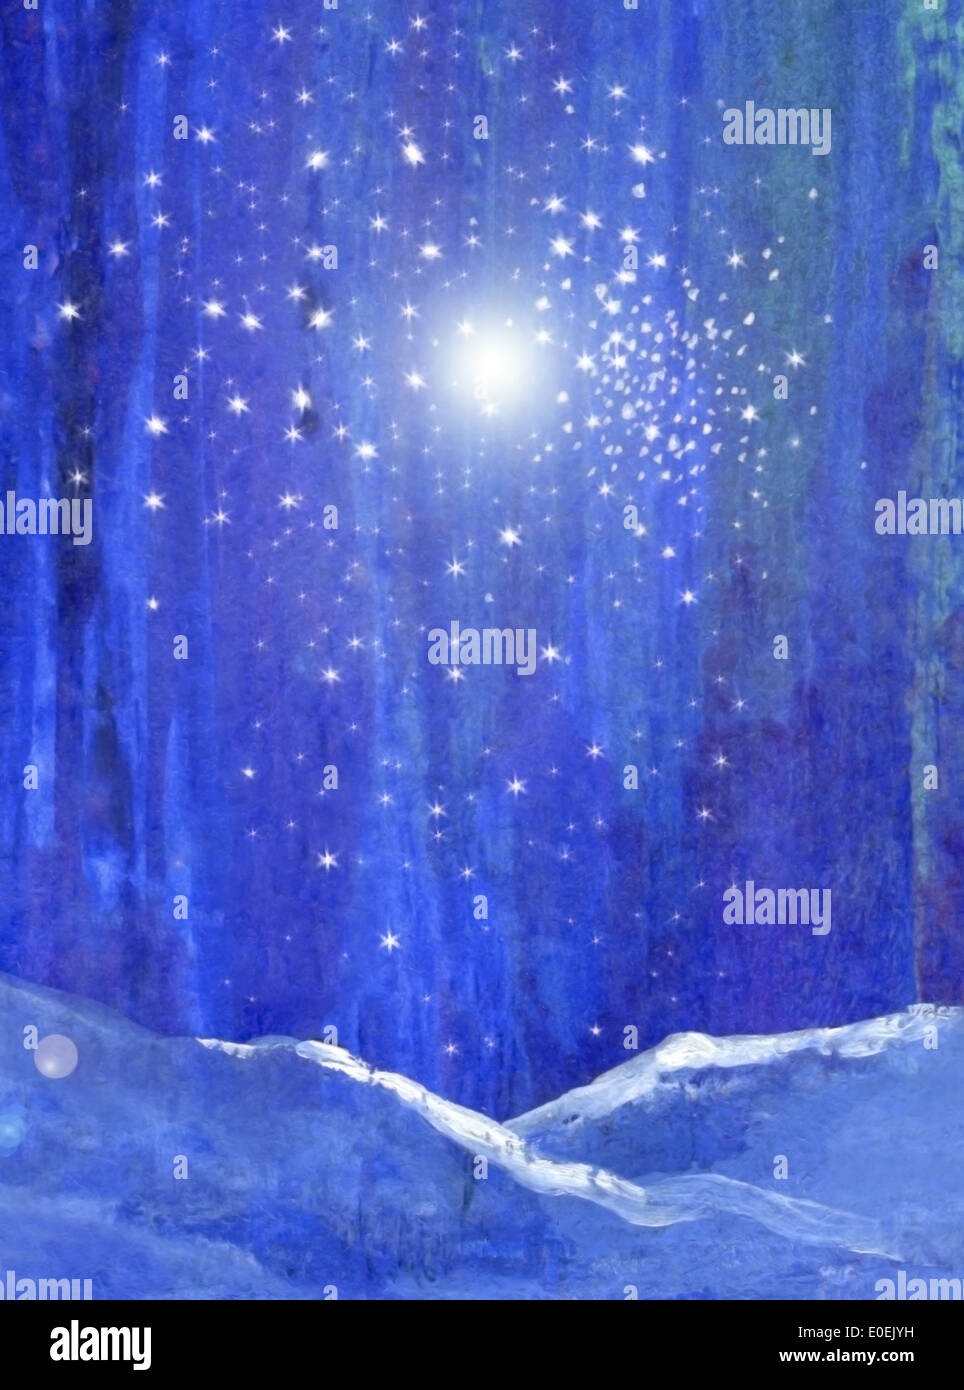 Blaue Nacht-Wald mit Schnee Licht und Sterne original Kunst Aquarell Gouache digital. Stockfoto